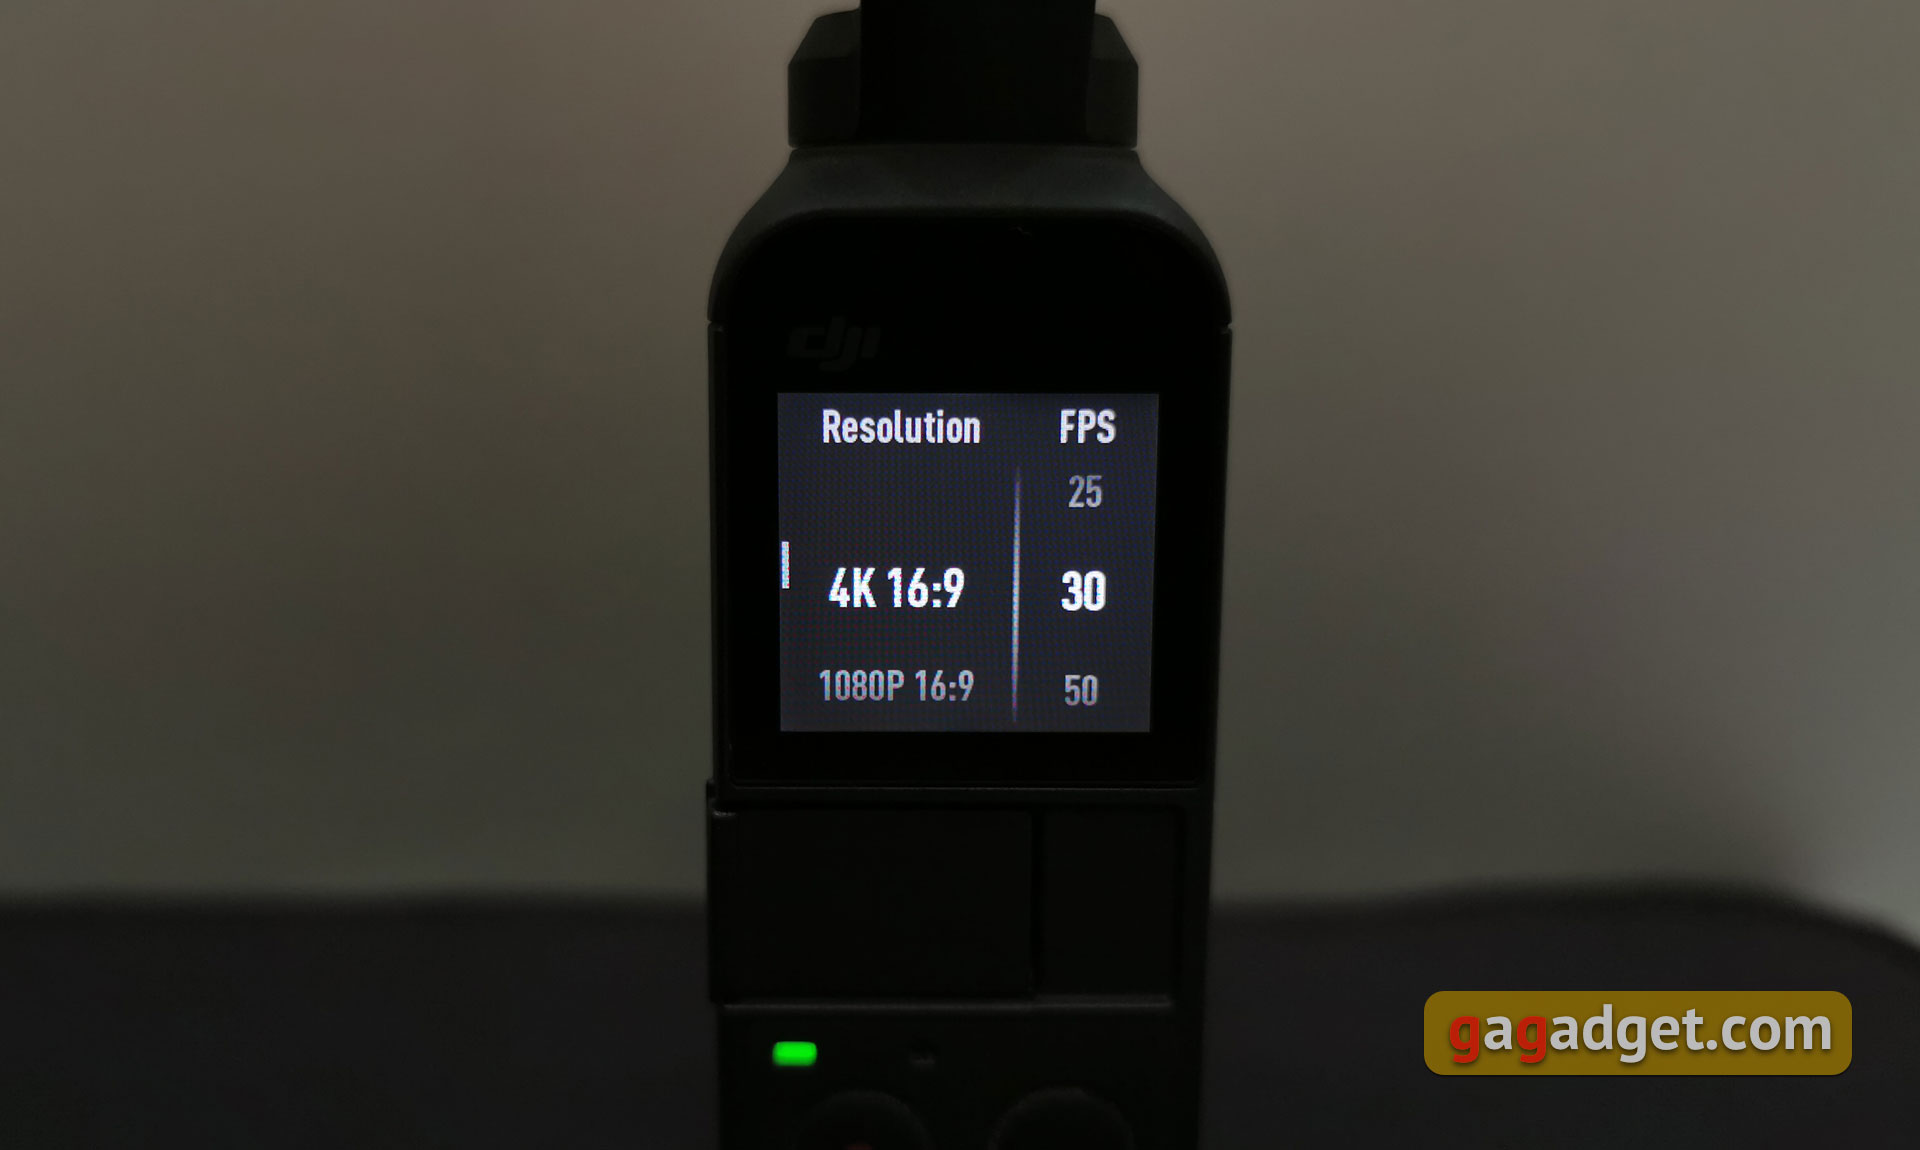 Огляд кишенькової камери зі стабілізатором DJI Osmo Pocket: задоволення, яке можна купити-35